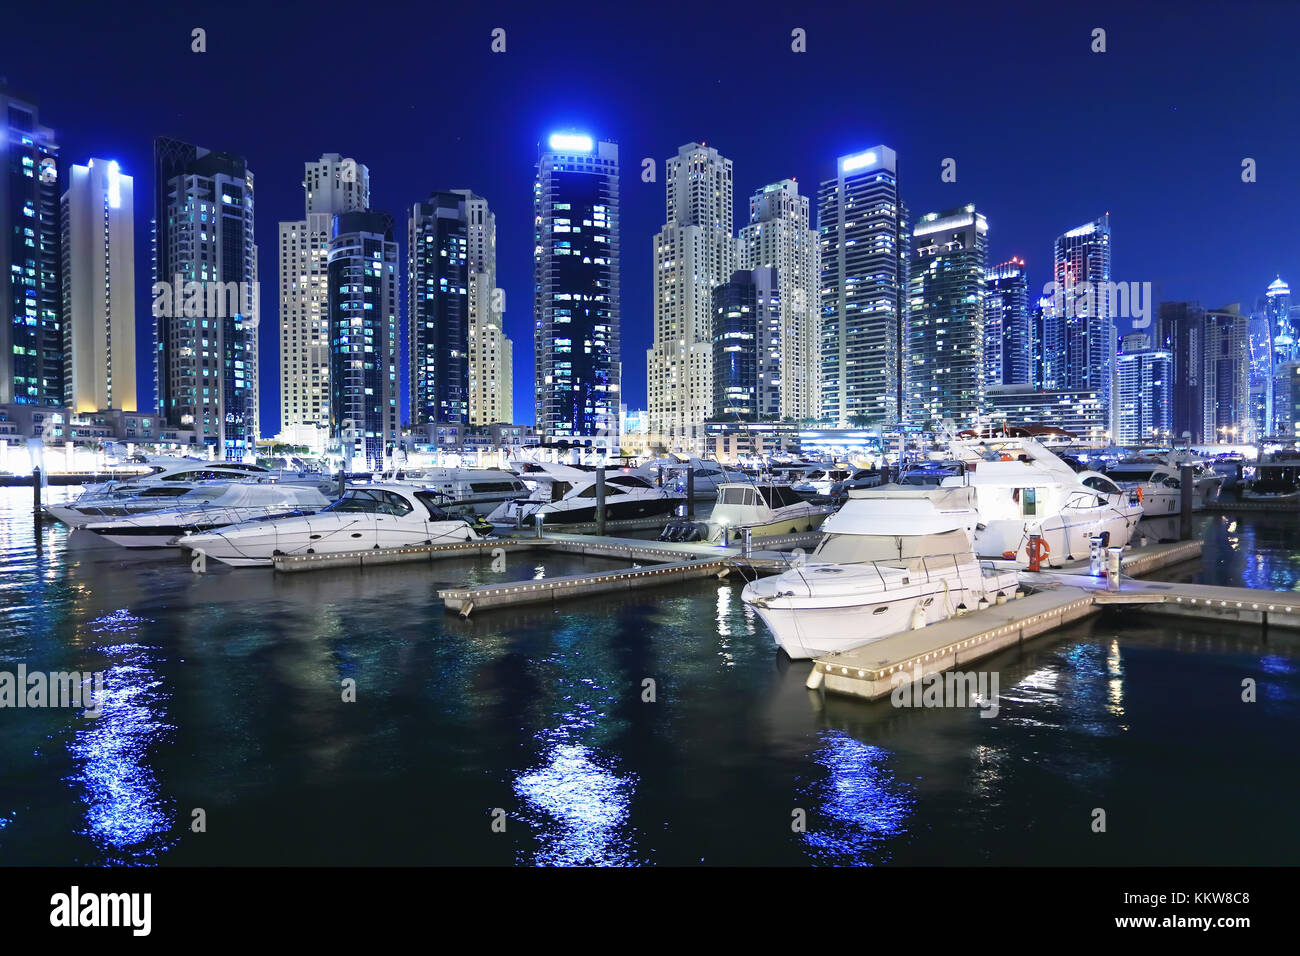 Marina mit luxuriösen Yachten in Dubai bei Nacht. Night Skyline von Dubai im Geschäftsviertel von Dubai bei Nacht. Stockfoto